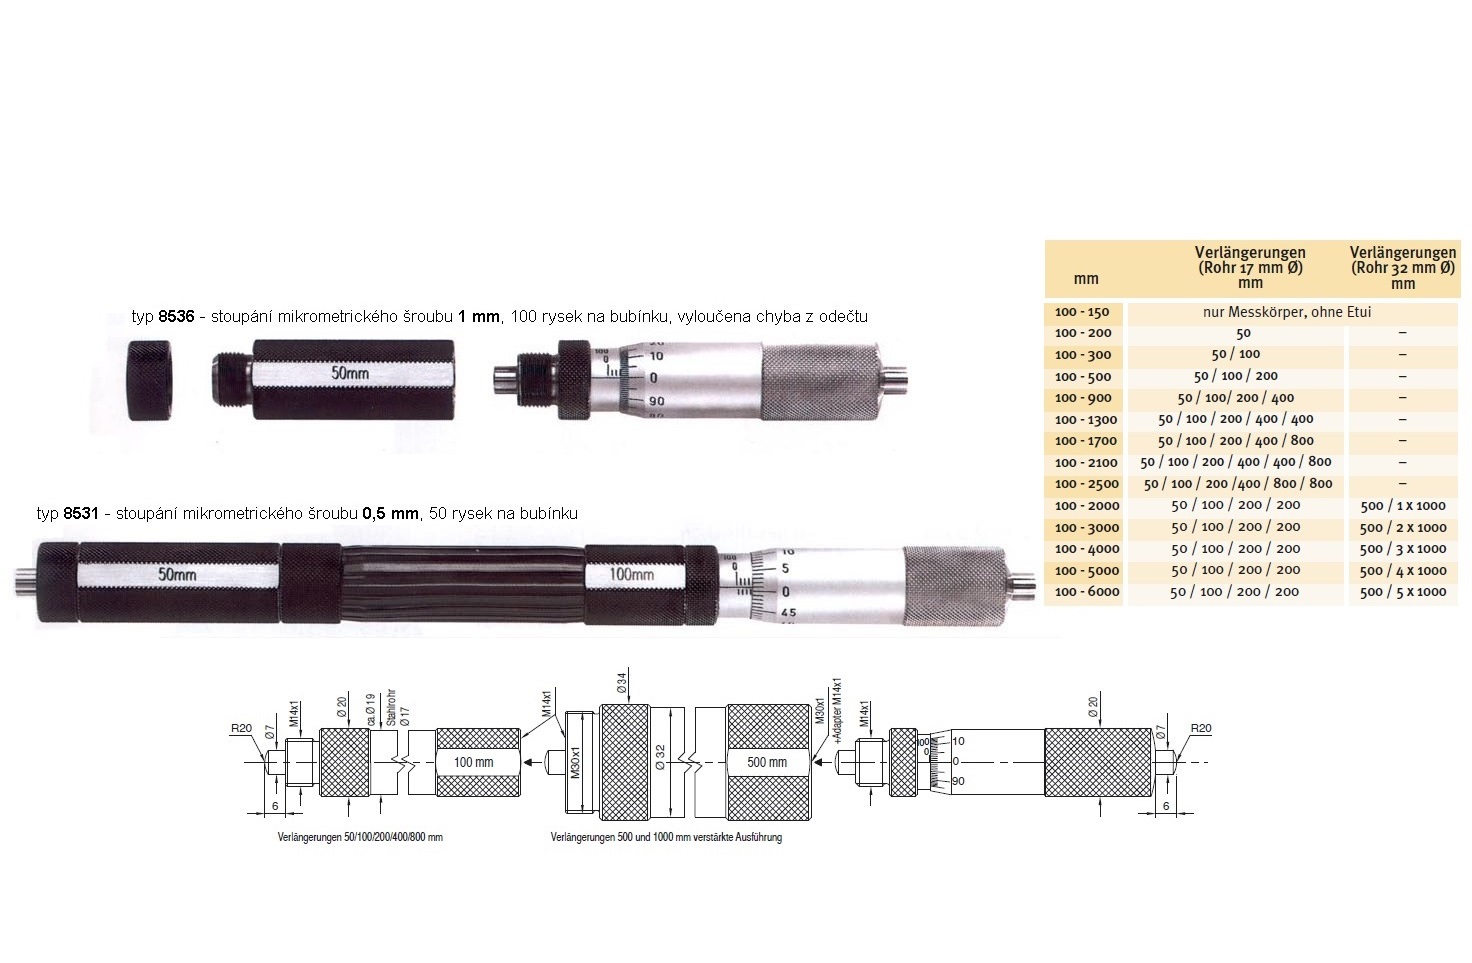 Mikrometrický odpich skládací HARTIG 100-1300 mm, stoupání šroubu 1 mm, doteky tvrdokov